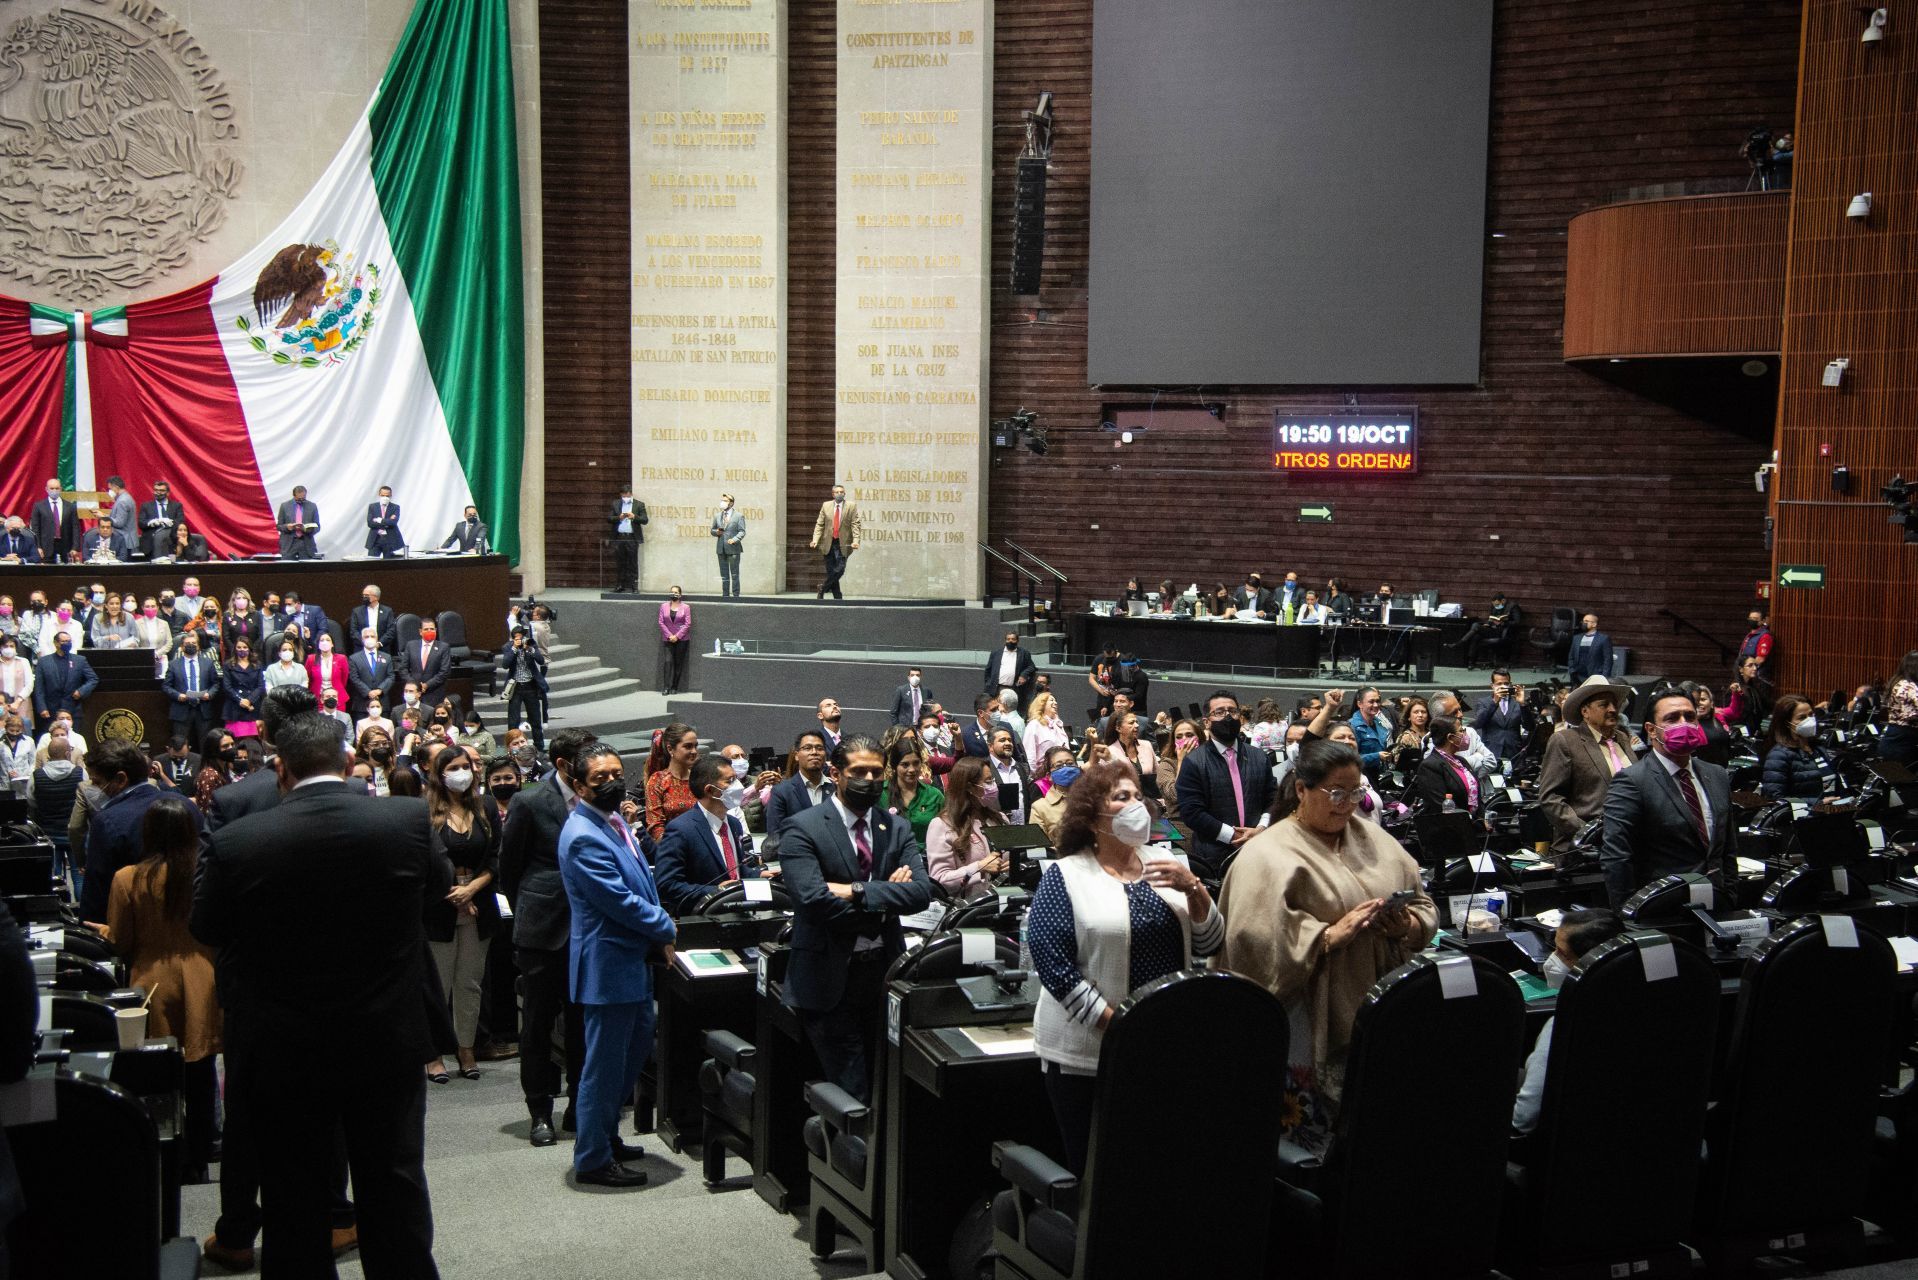 Diputados del grupo parlamentario de Morena dieron la espalda a Margarita Zavala, diputada del PAN, mientras ofrecía su discurso durante la sesión ordinaria de la Cámara de Diputado